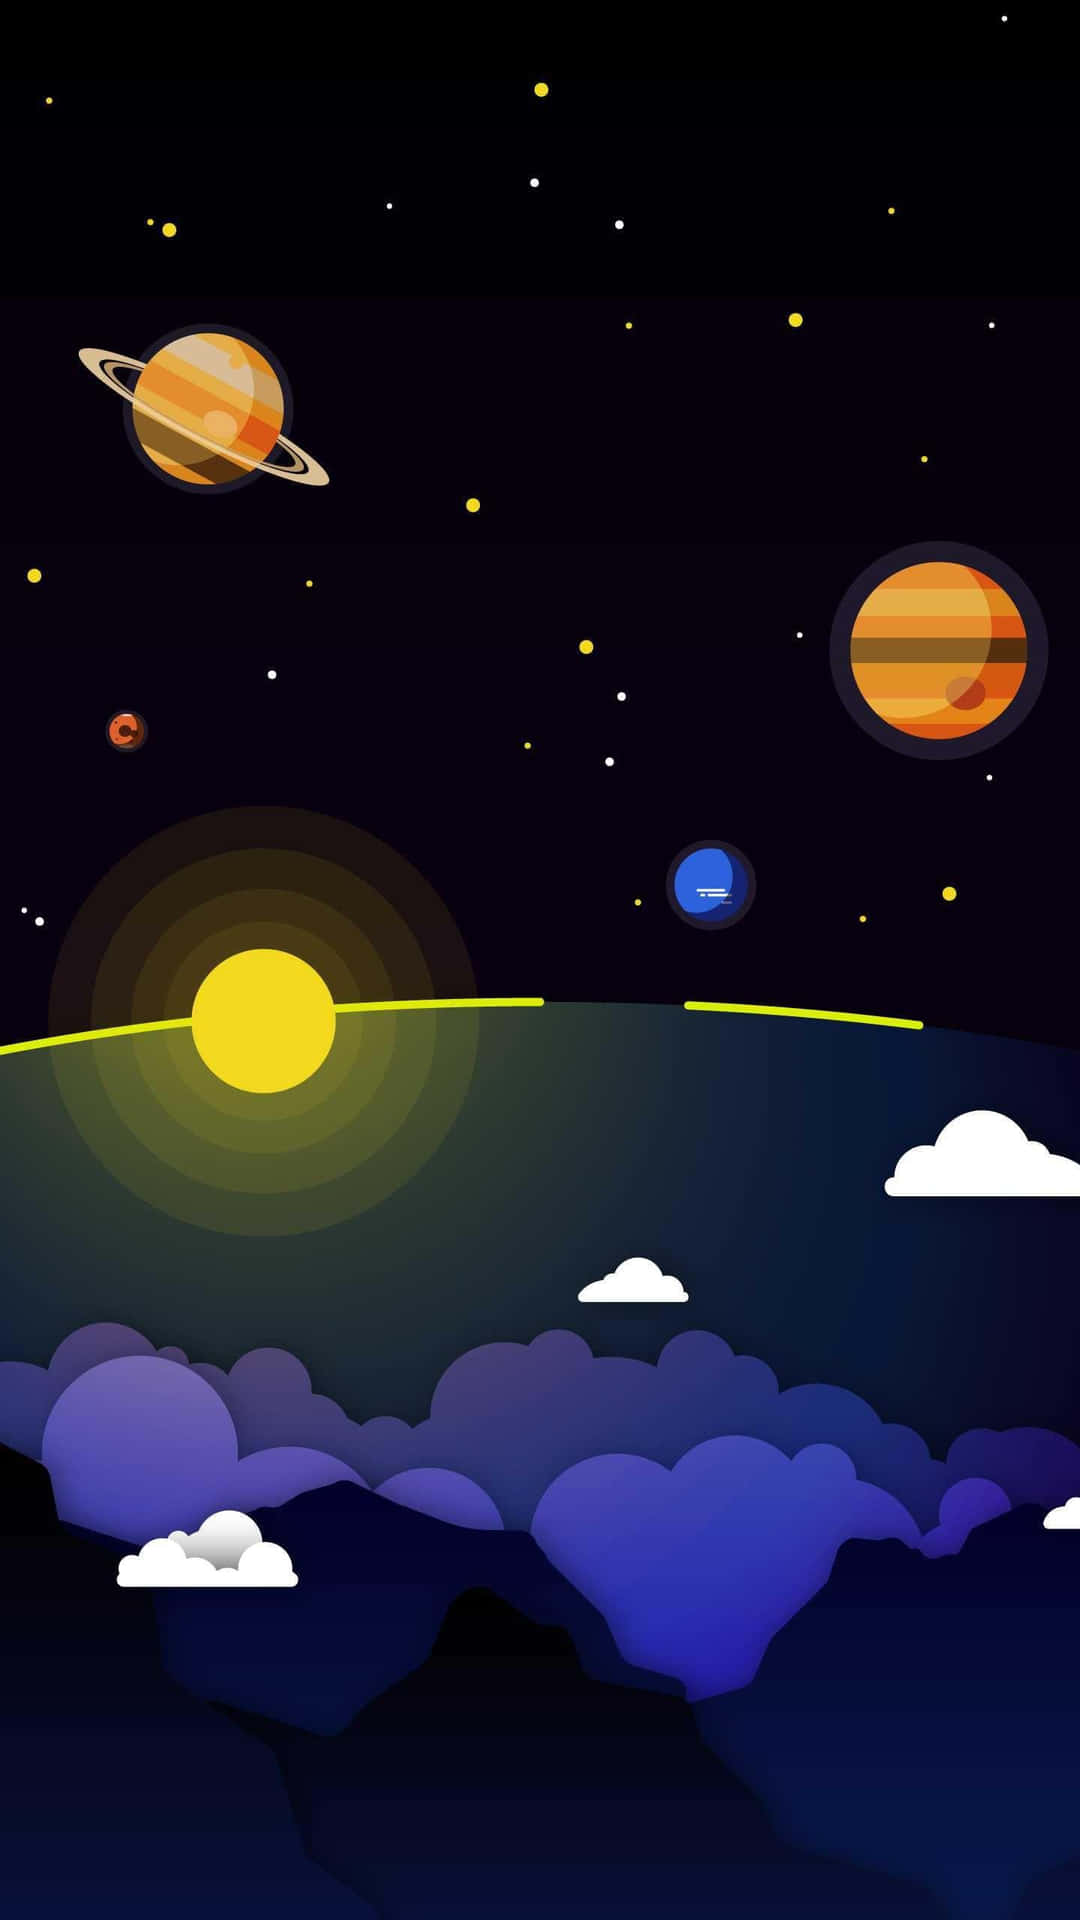 Solar System Digital Artwork Wallpaper